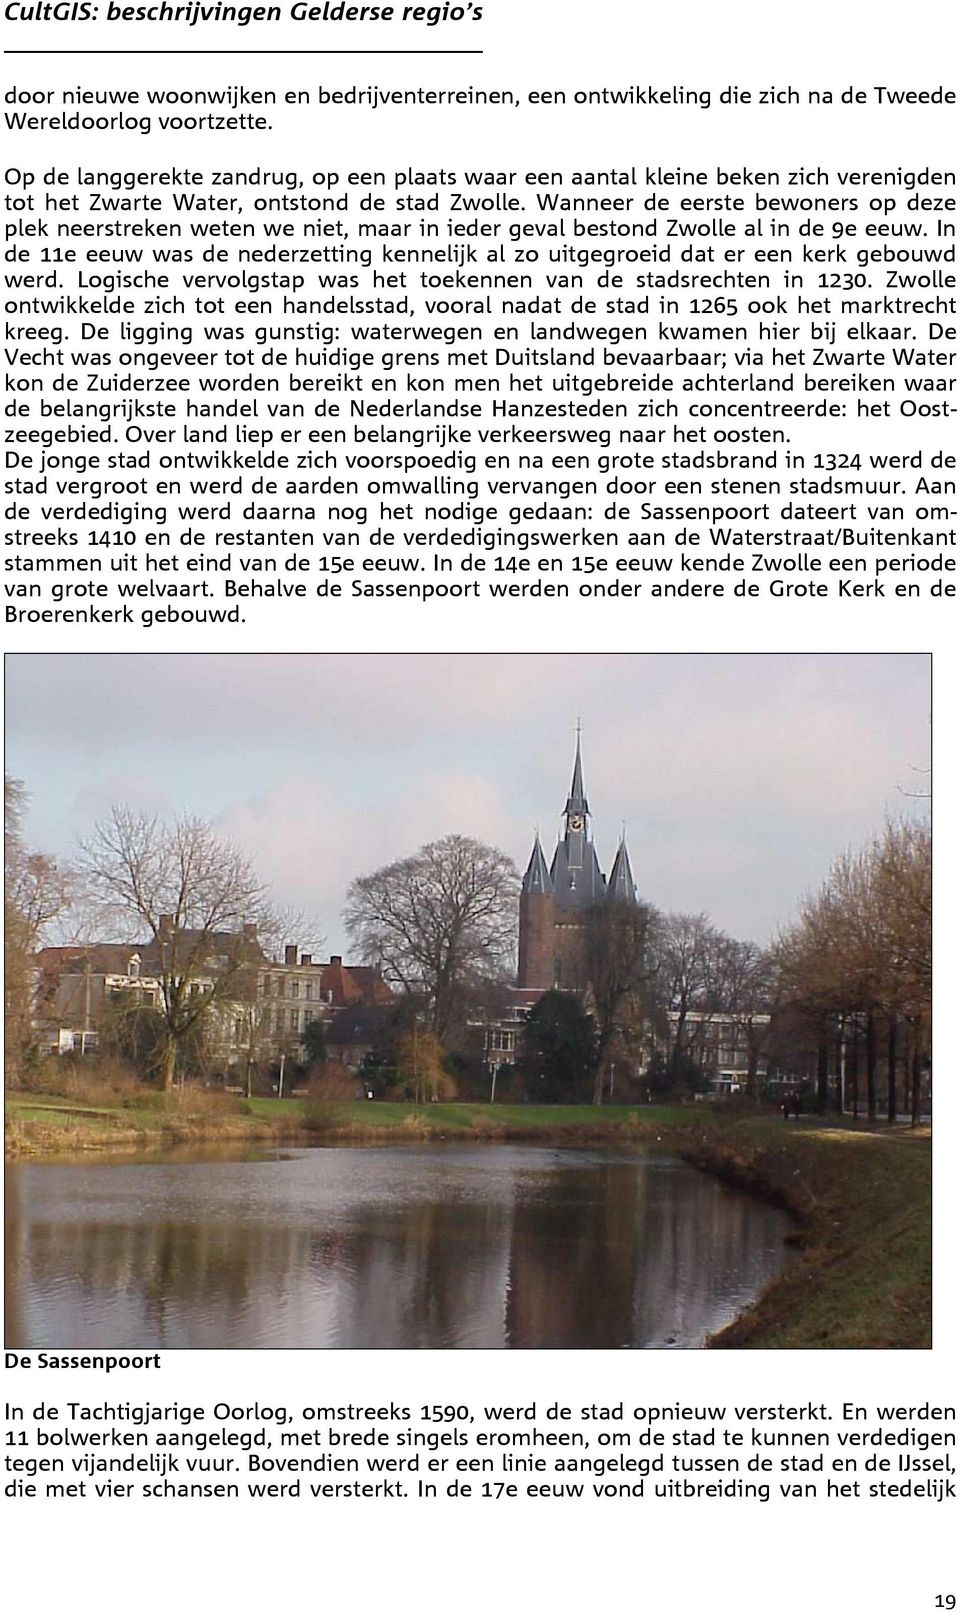 Wanneer de eerste bewoners op deze plek neerstreken weten we niet, maar in ieder geval bestond Zwolle al in de 9e eeuw.